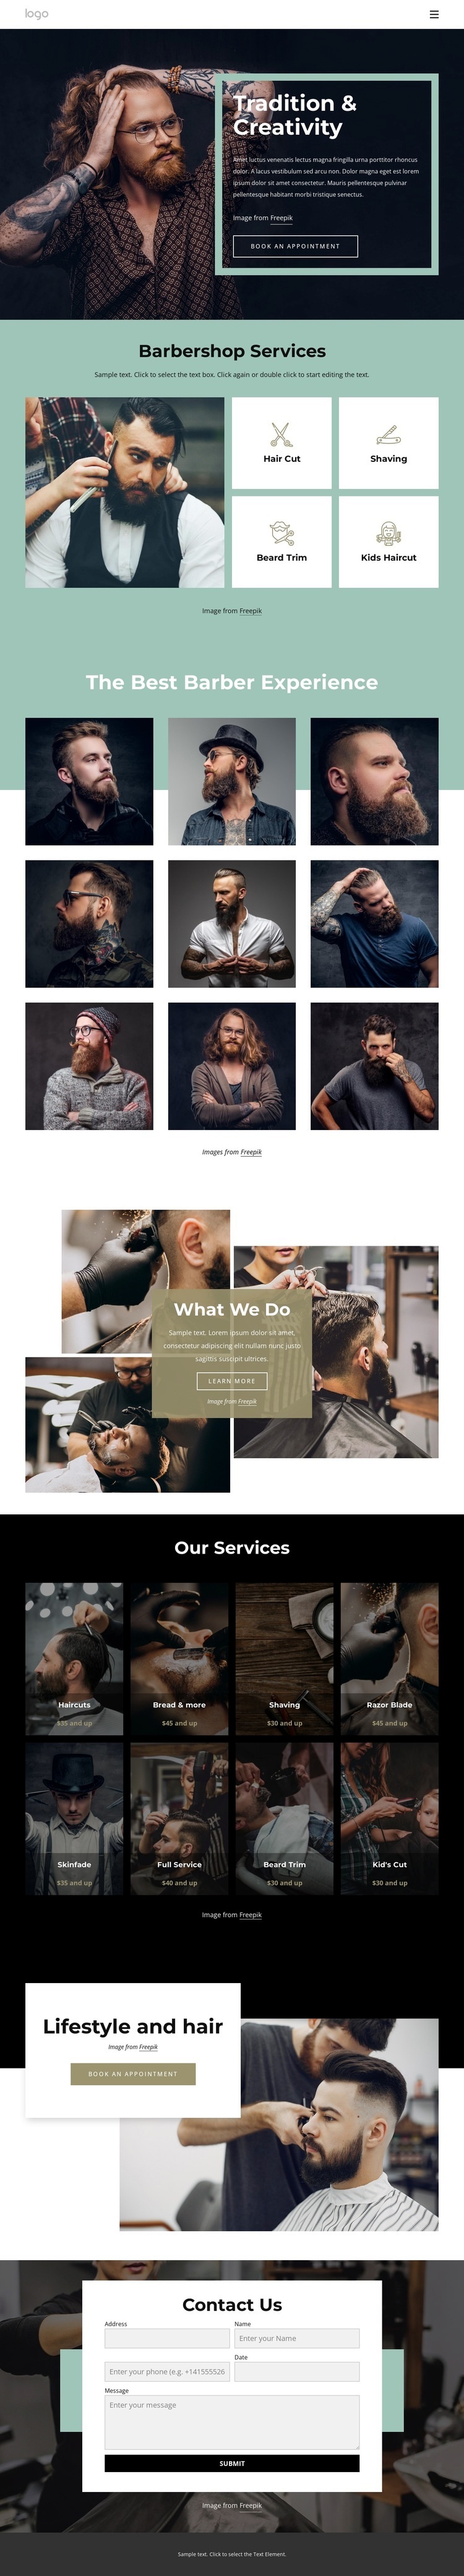 Public barber salon Homepage Design